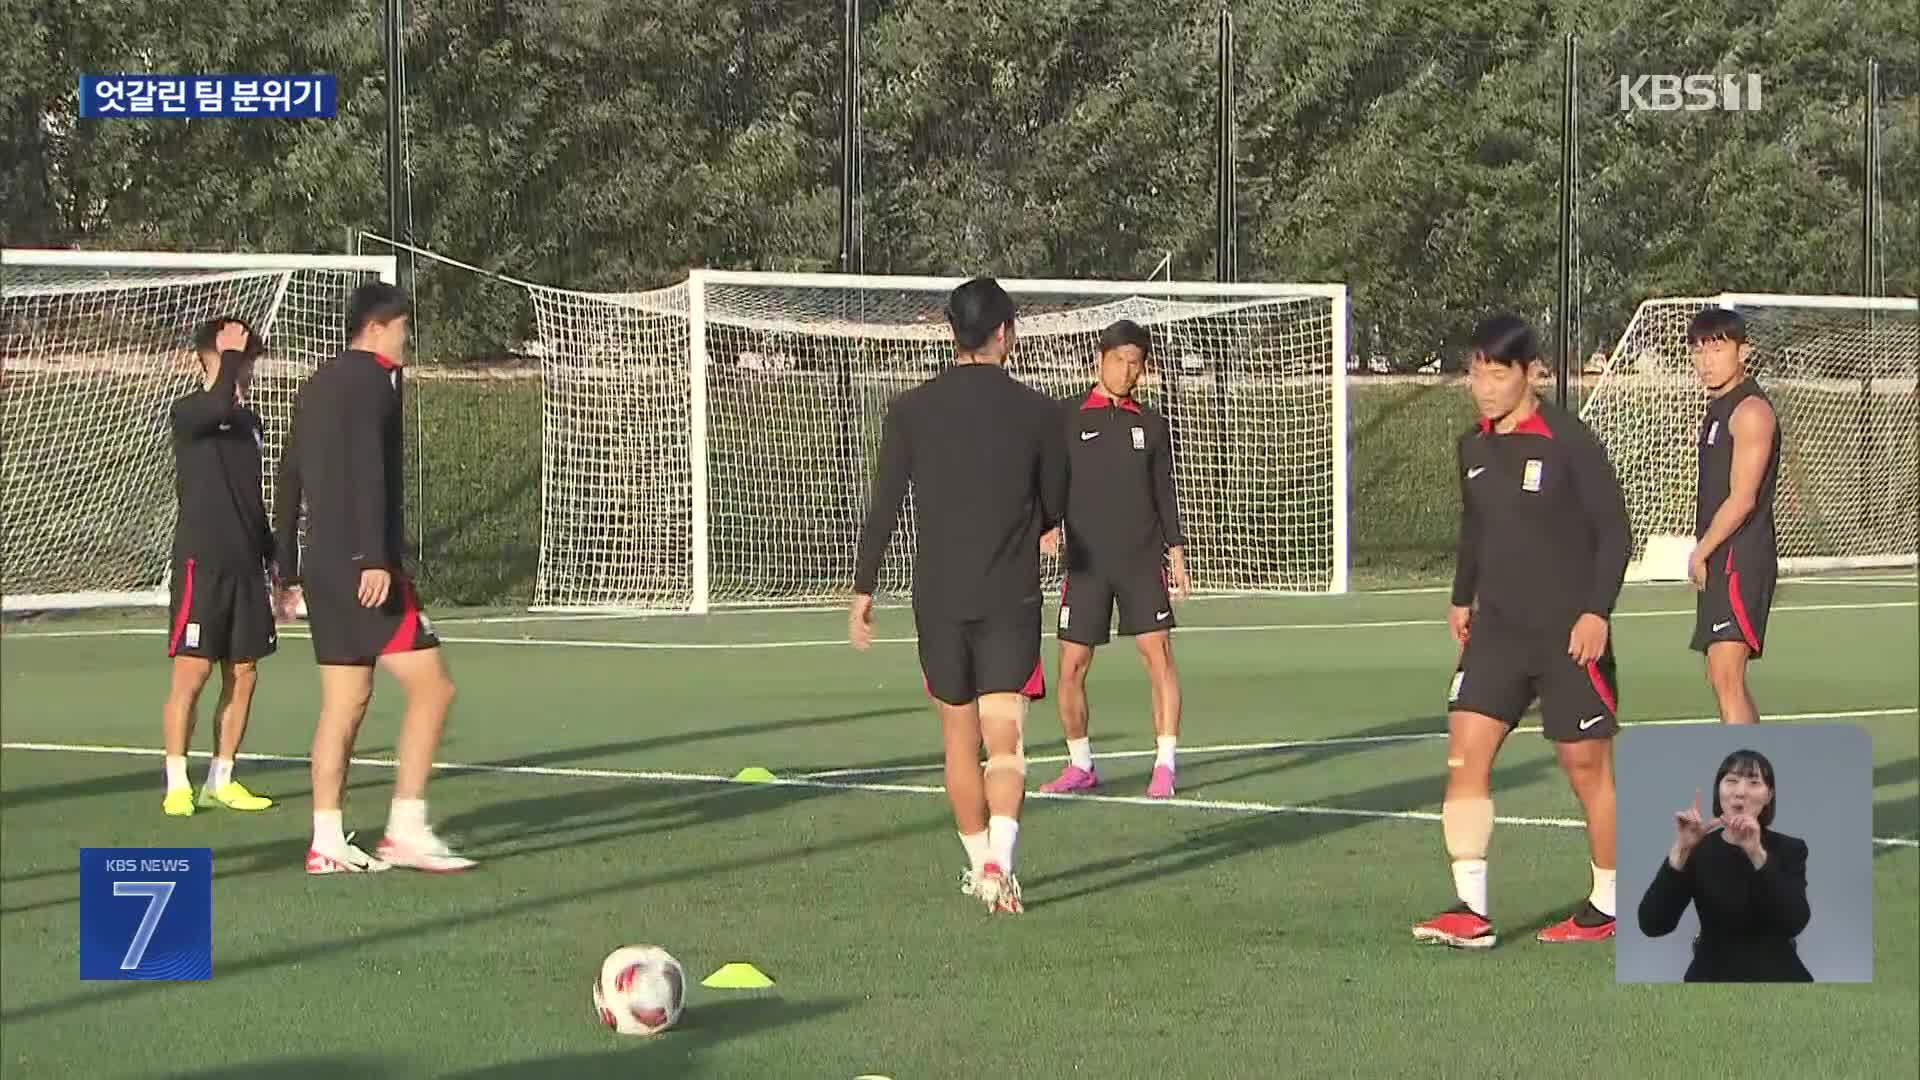 대한민국 축구, 내일 밤 요르단과 준결승 한판승부